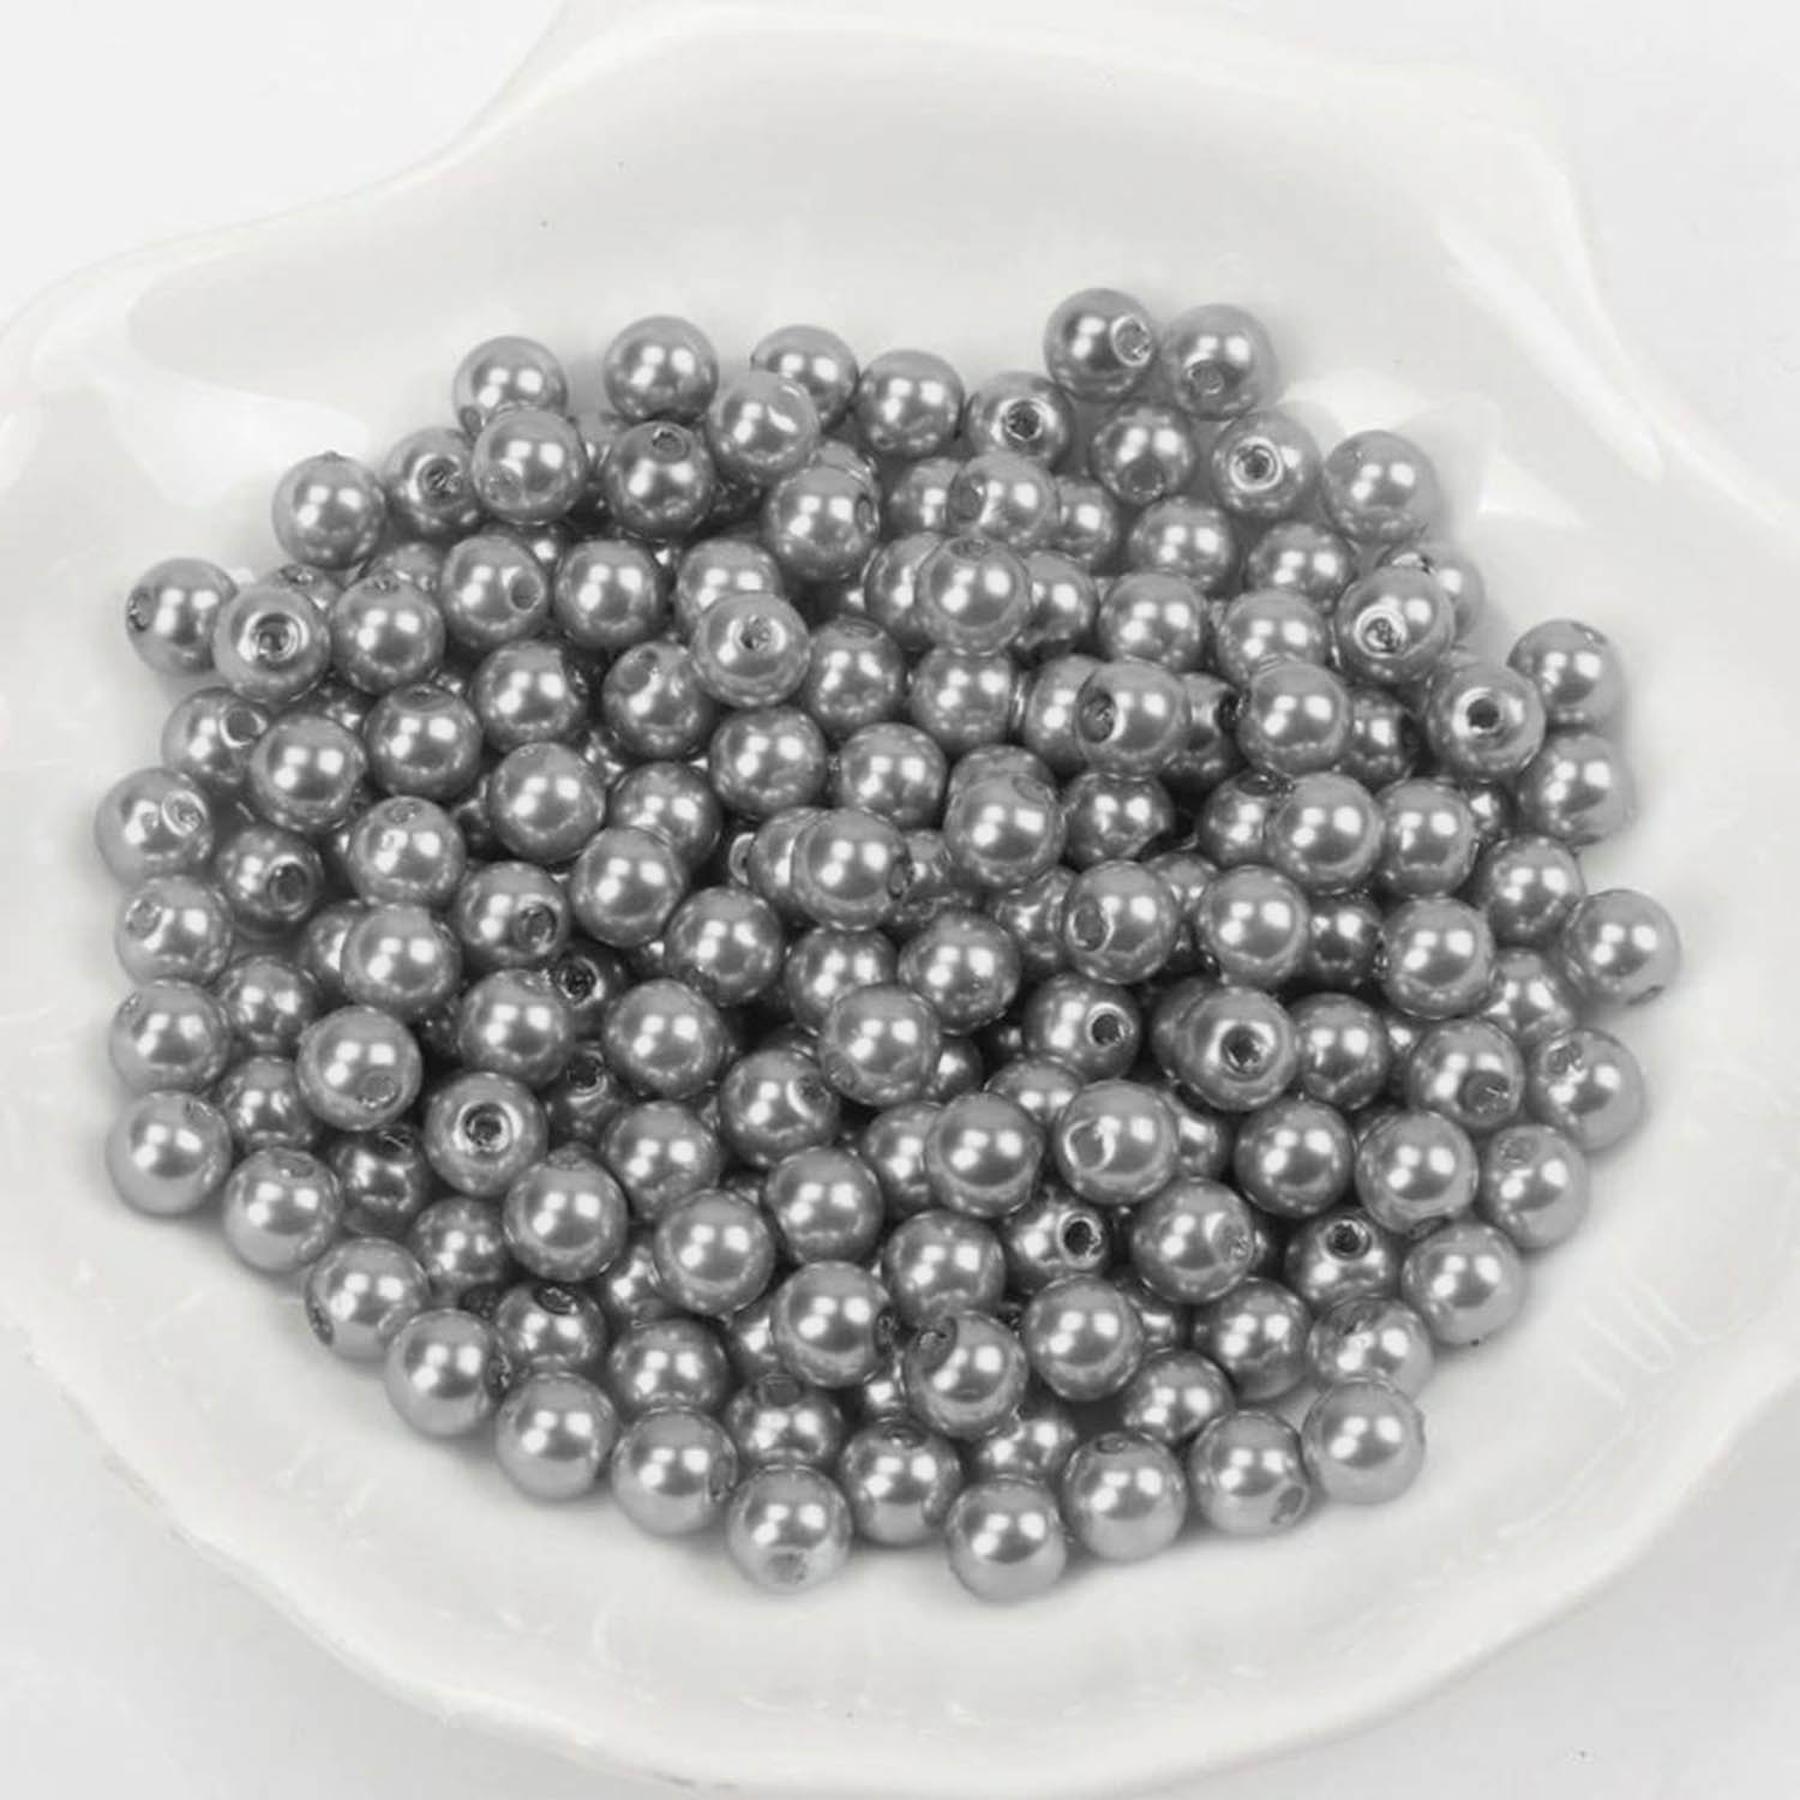 Wachsperlen - 600 Stück - 2mm - Silber